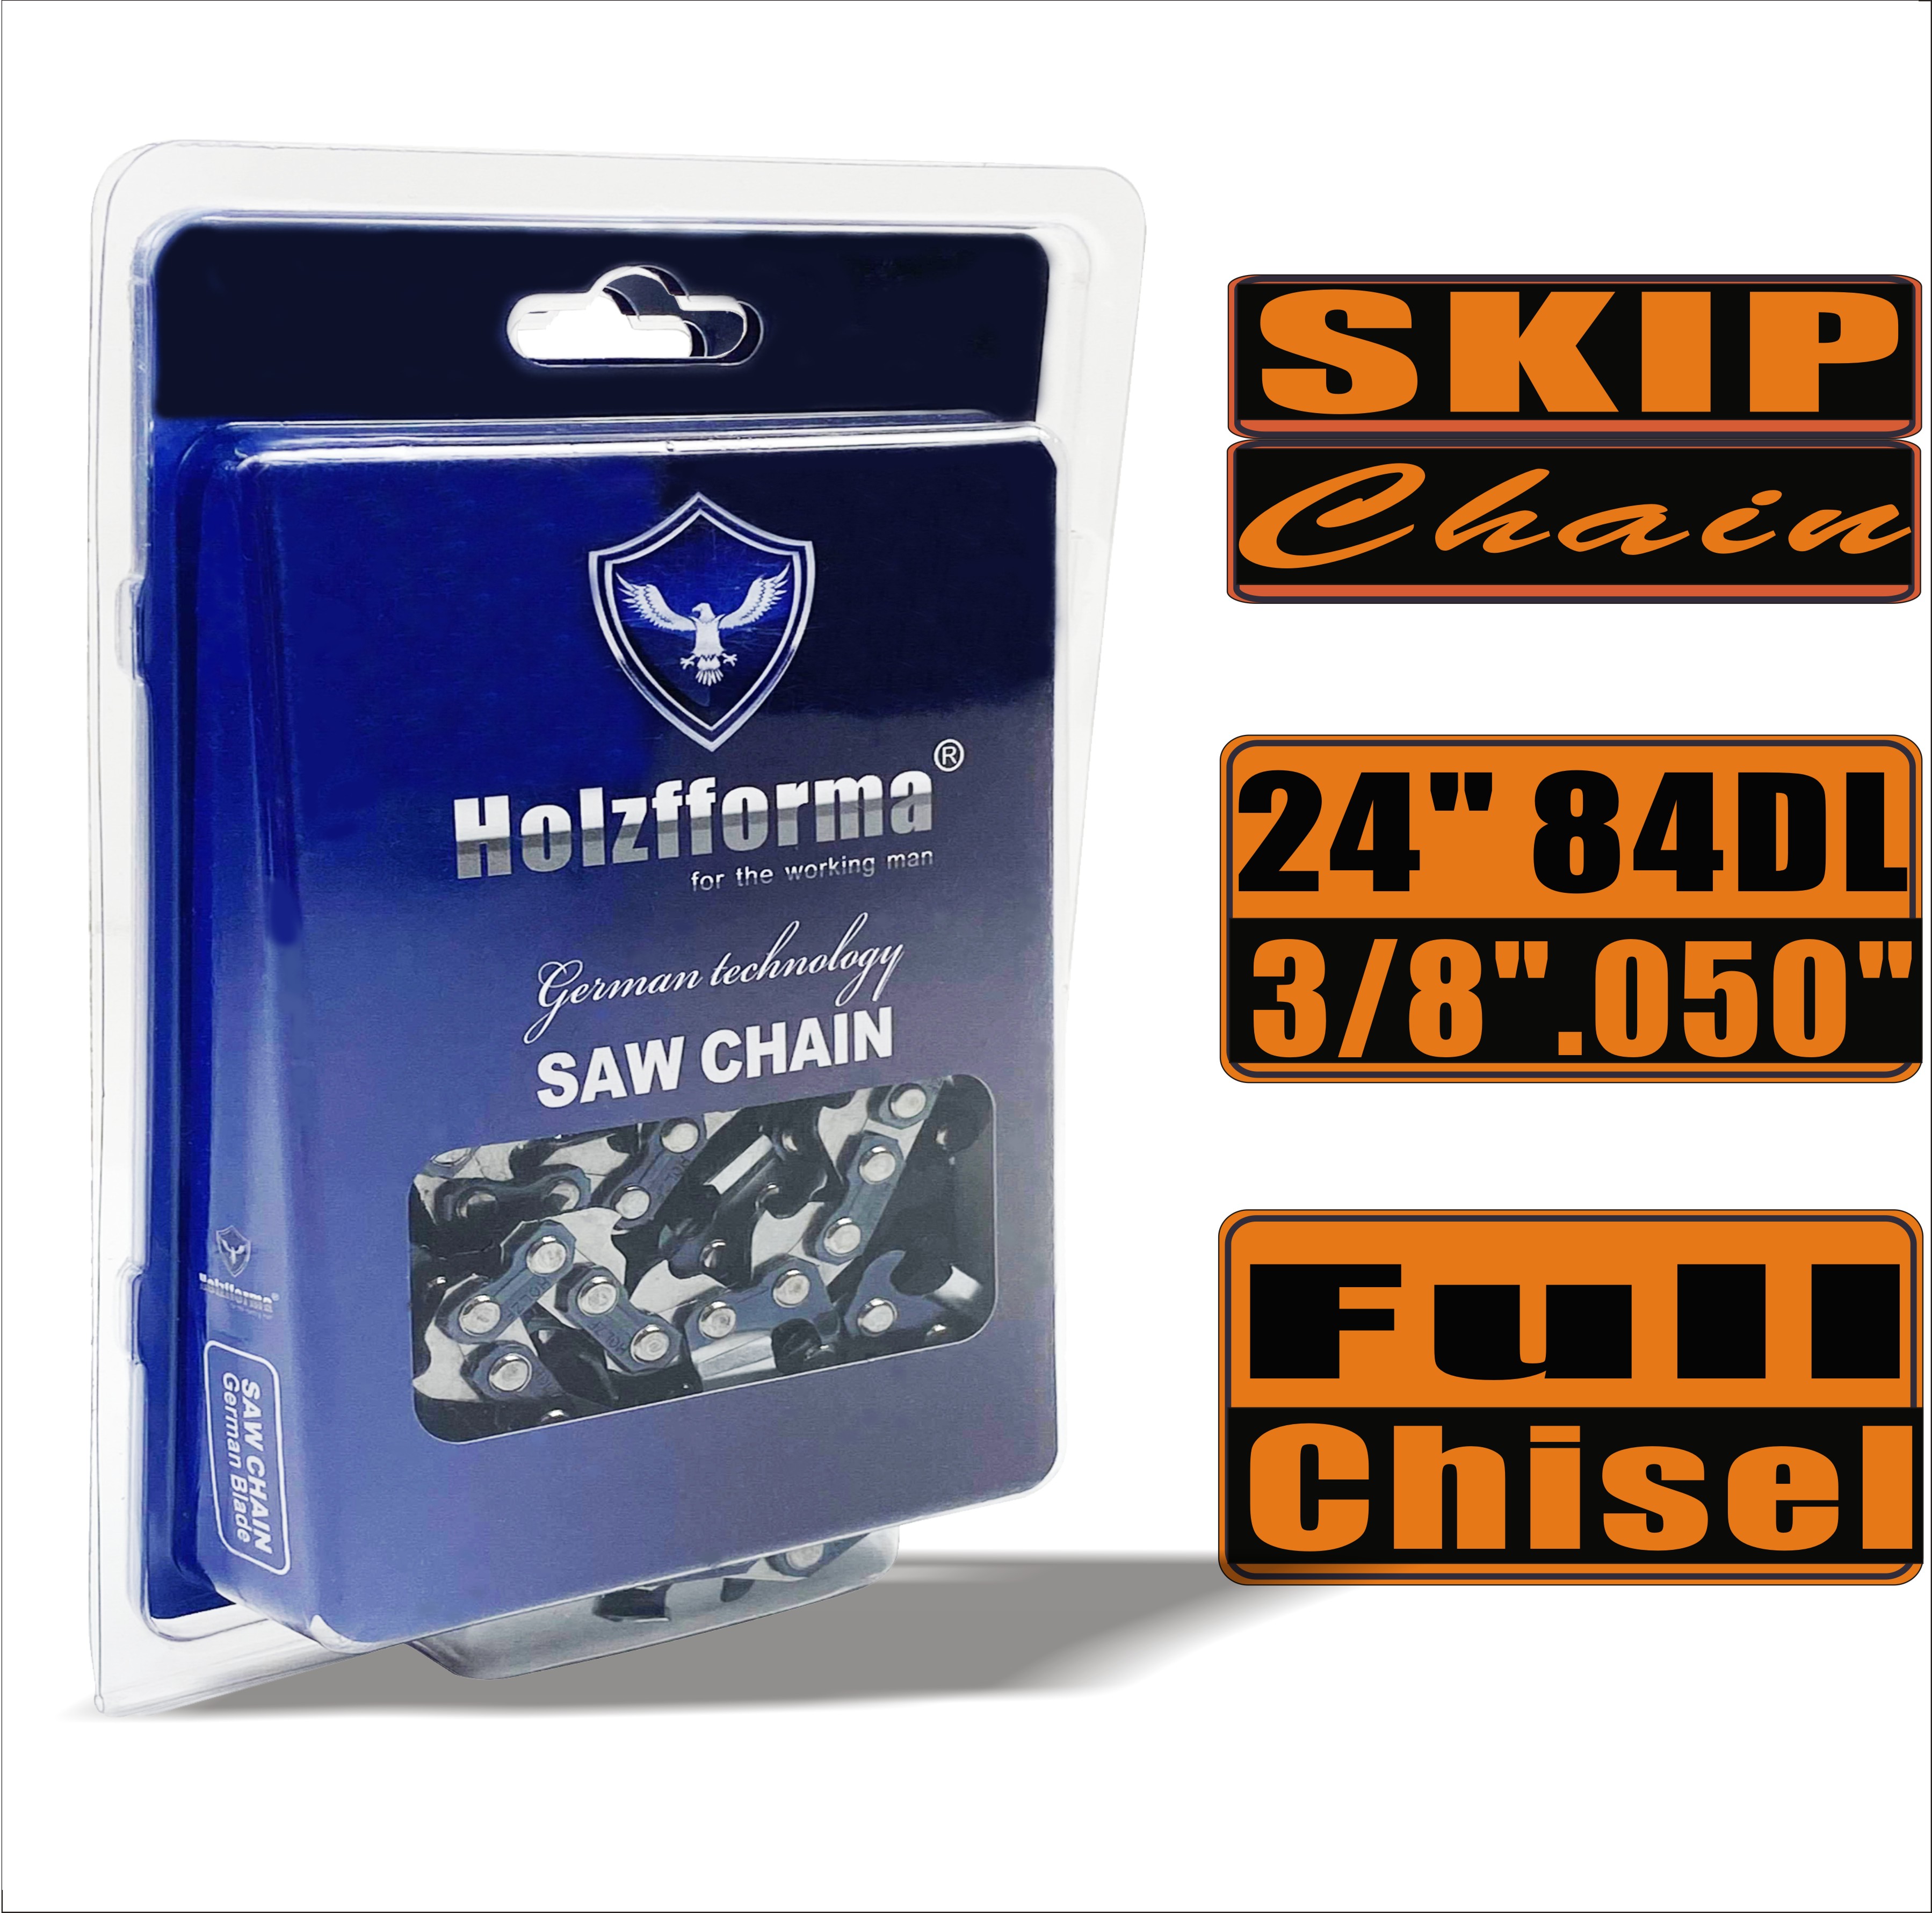 Holzfforma® Skip Chain Full Chisel 3/8'' .050'' 24inch 84DL цепи для Бензопилы Высококачественные немецкие лезвия и звенья